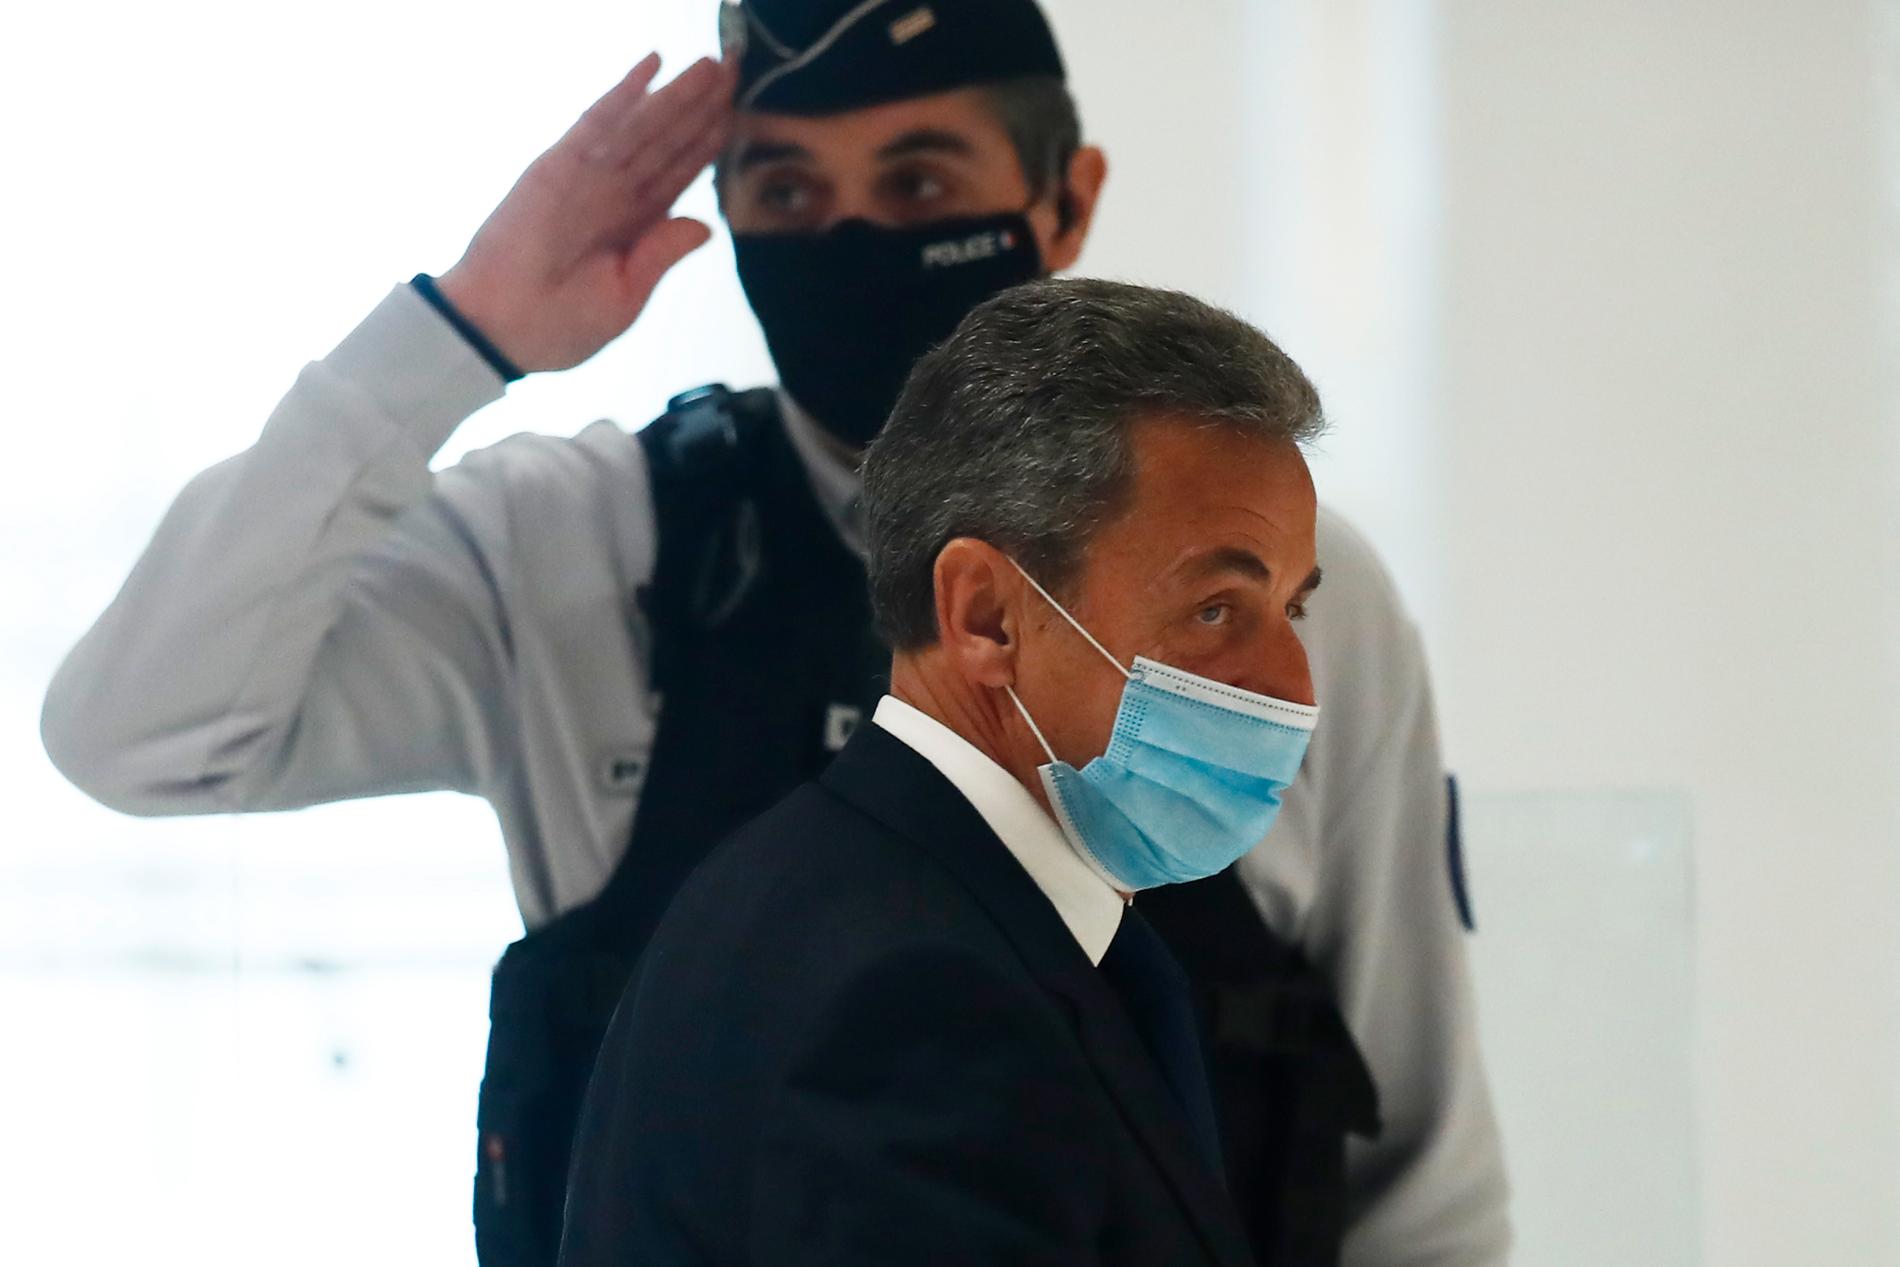 Frankrikes tidigare president Nicolas Sarkozy lämnar domstolen på måndagen efter att han dömts till ett fängelsestraff efter att han enligt rätten gjort sig skyldig till mutbrott. Domen kommer att överklagas.